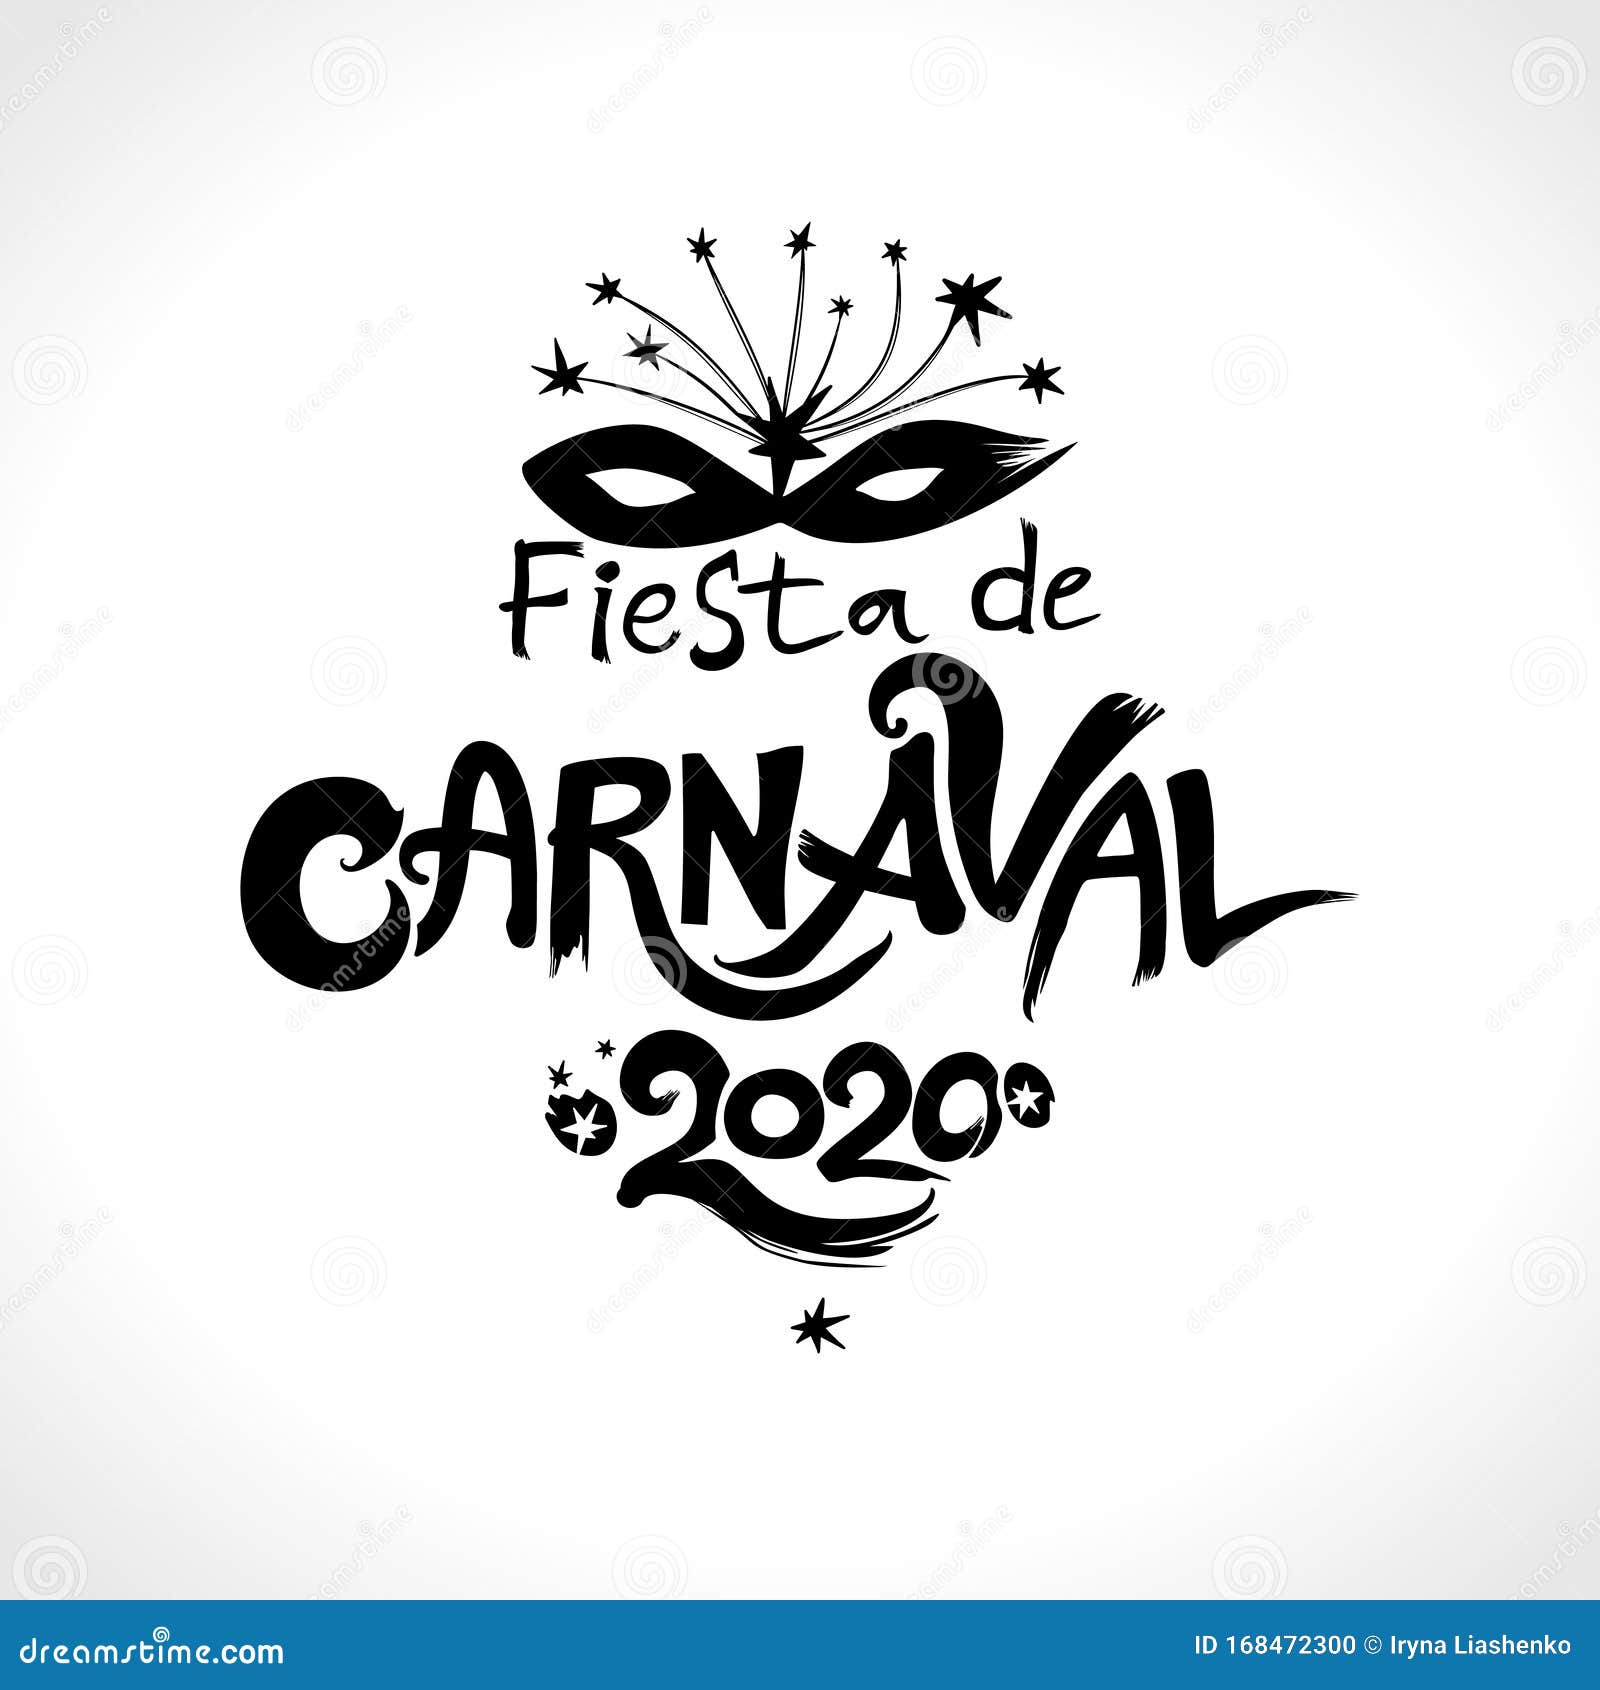 Vetores de Bienvenido Al Carnaval 2019 Logo Em Espanhol Traduzido